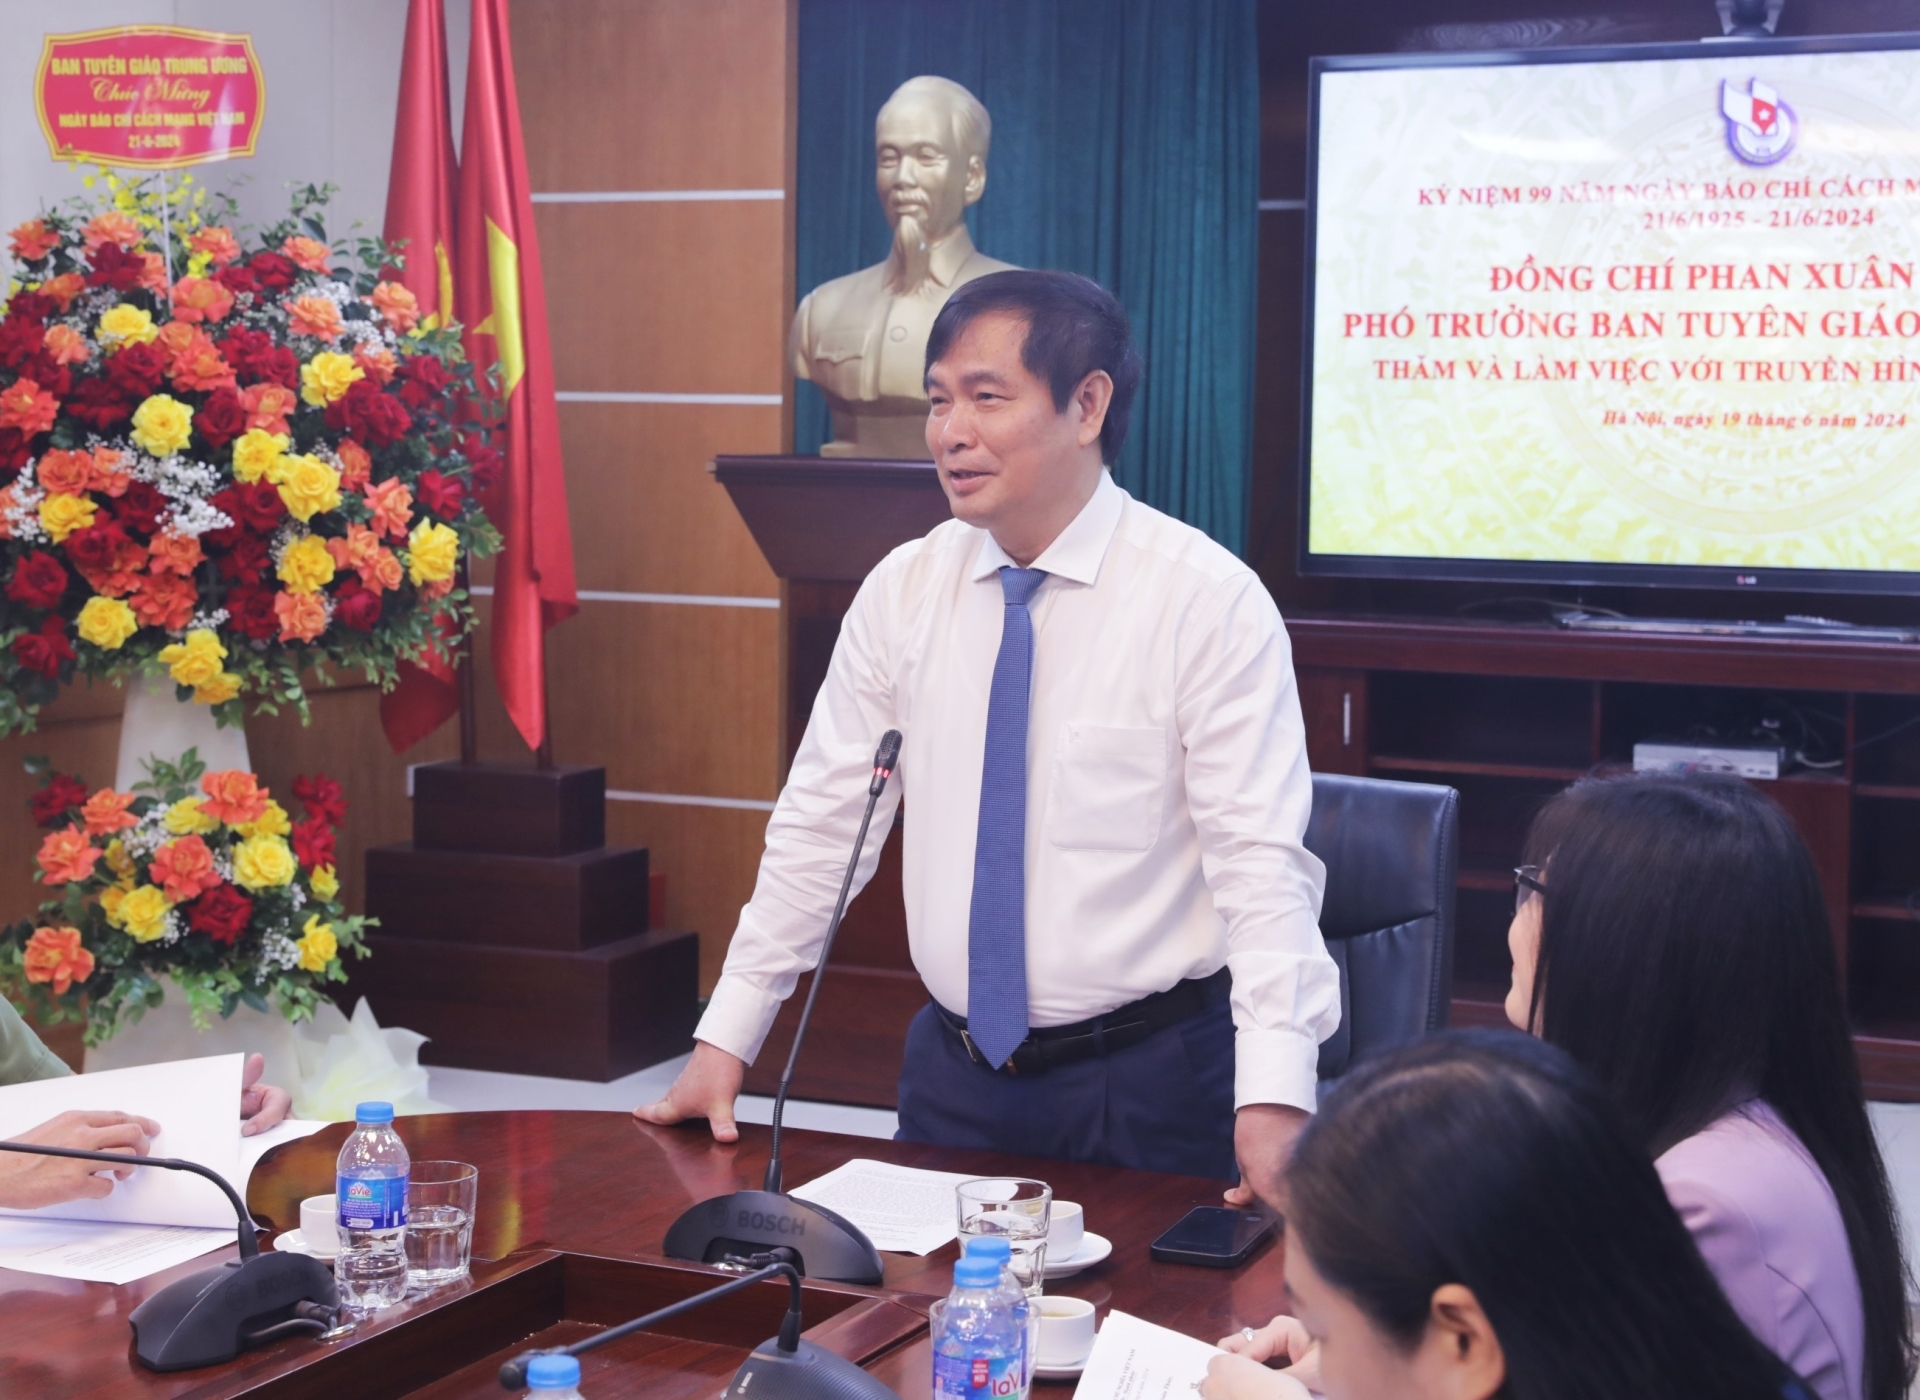 Phó Trưởng ban Tuyên giáo Trung ương Phan Xuân Thủy phát biểu tại buổi làm việc với Truyền hình Công an Nhân dân.